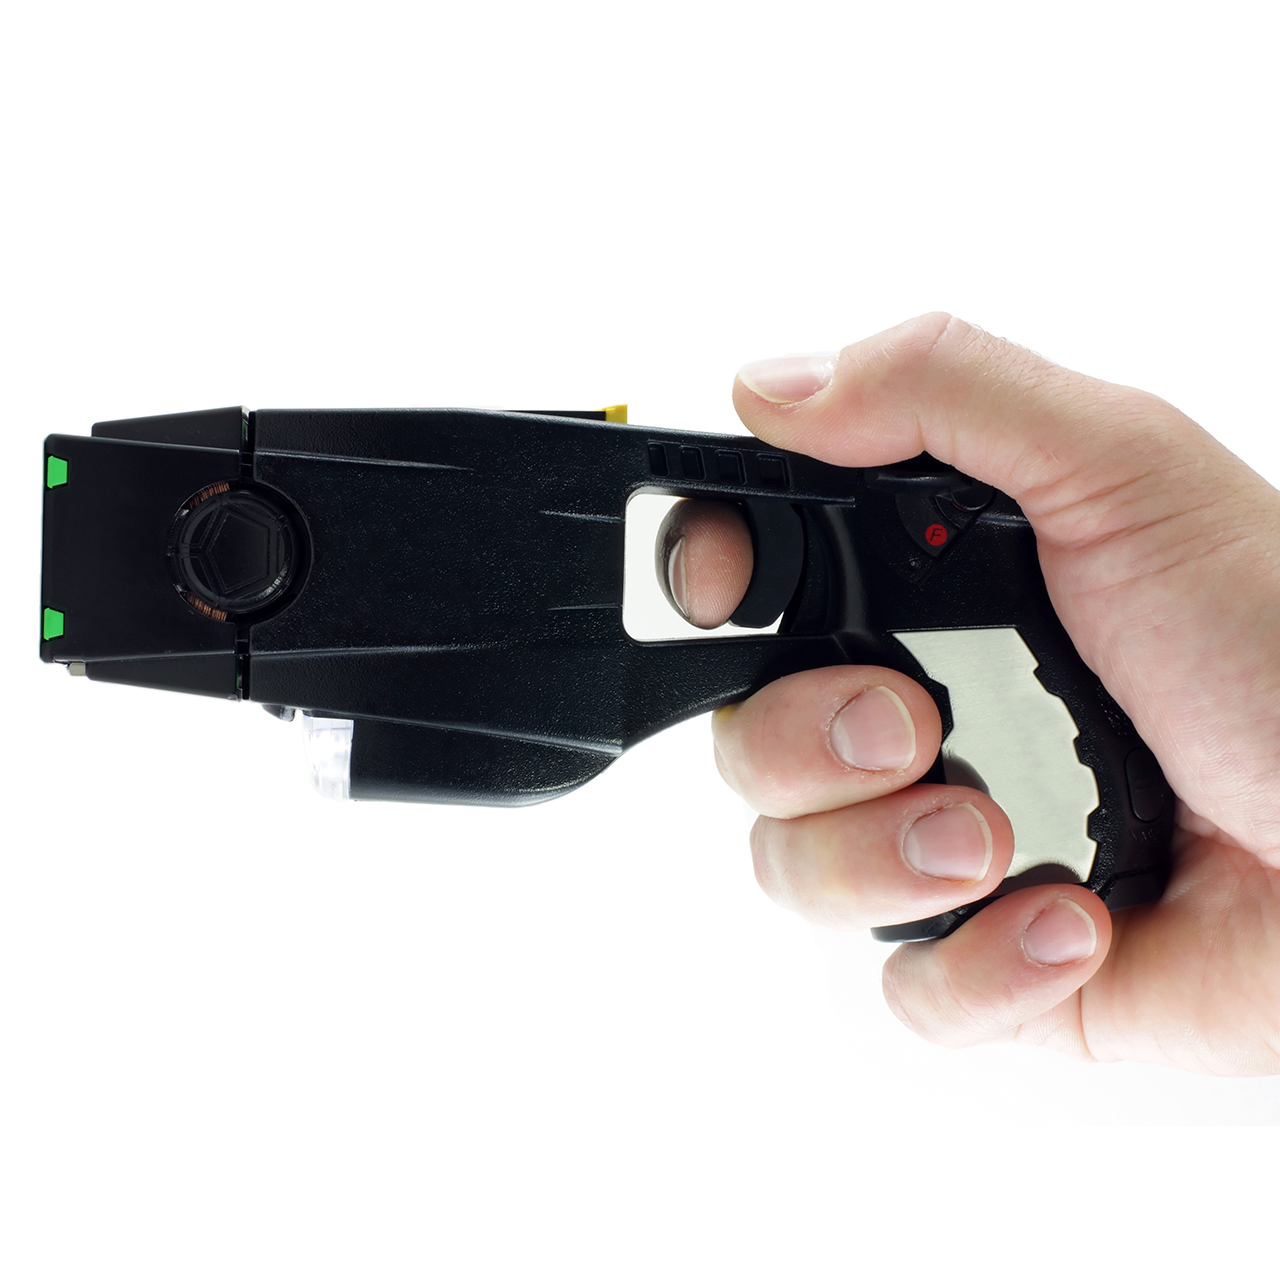 Taser Gun vs Taser? Choosing the Right Self-Defense Option